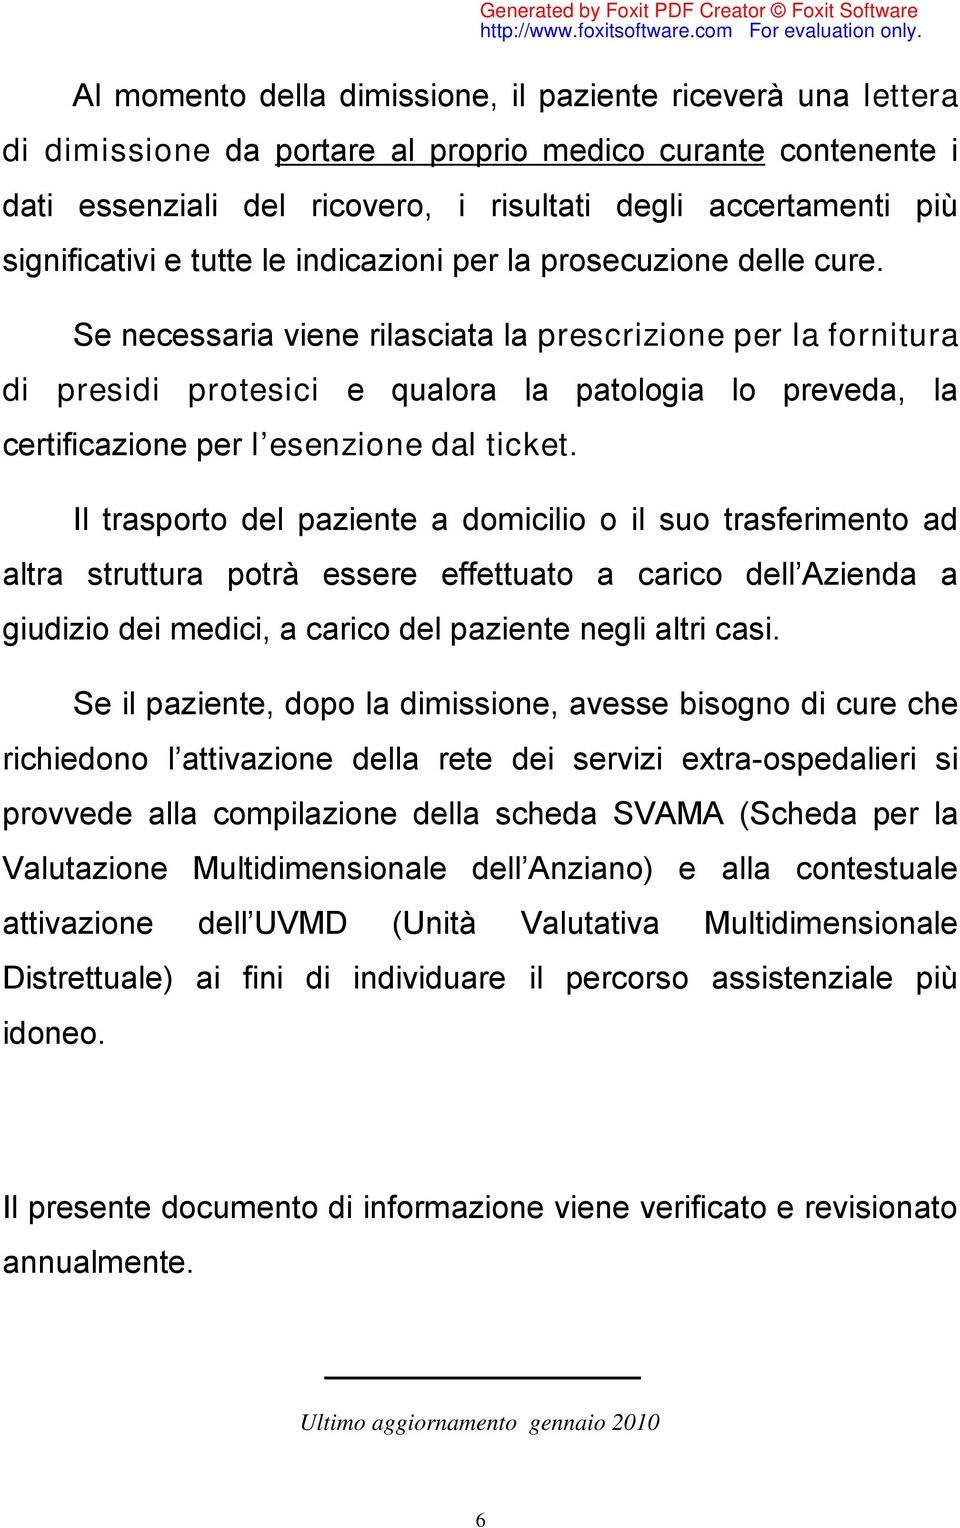 Se necessaria viene rilasciata la prescrizione per la fornitura di presidi protesici e qualora la patologia lo preveda, la certificazione per l esenzione dal ticket.